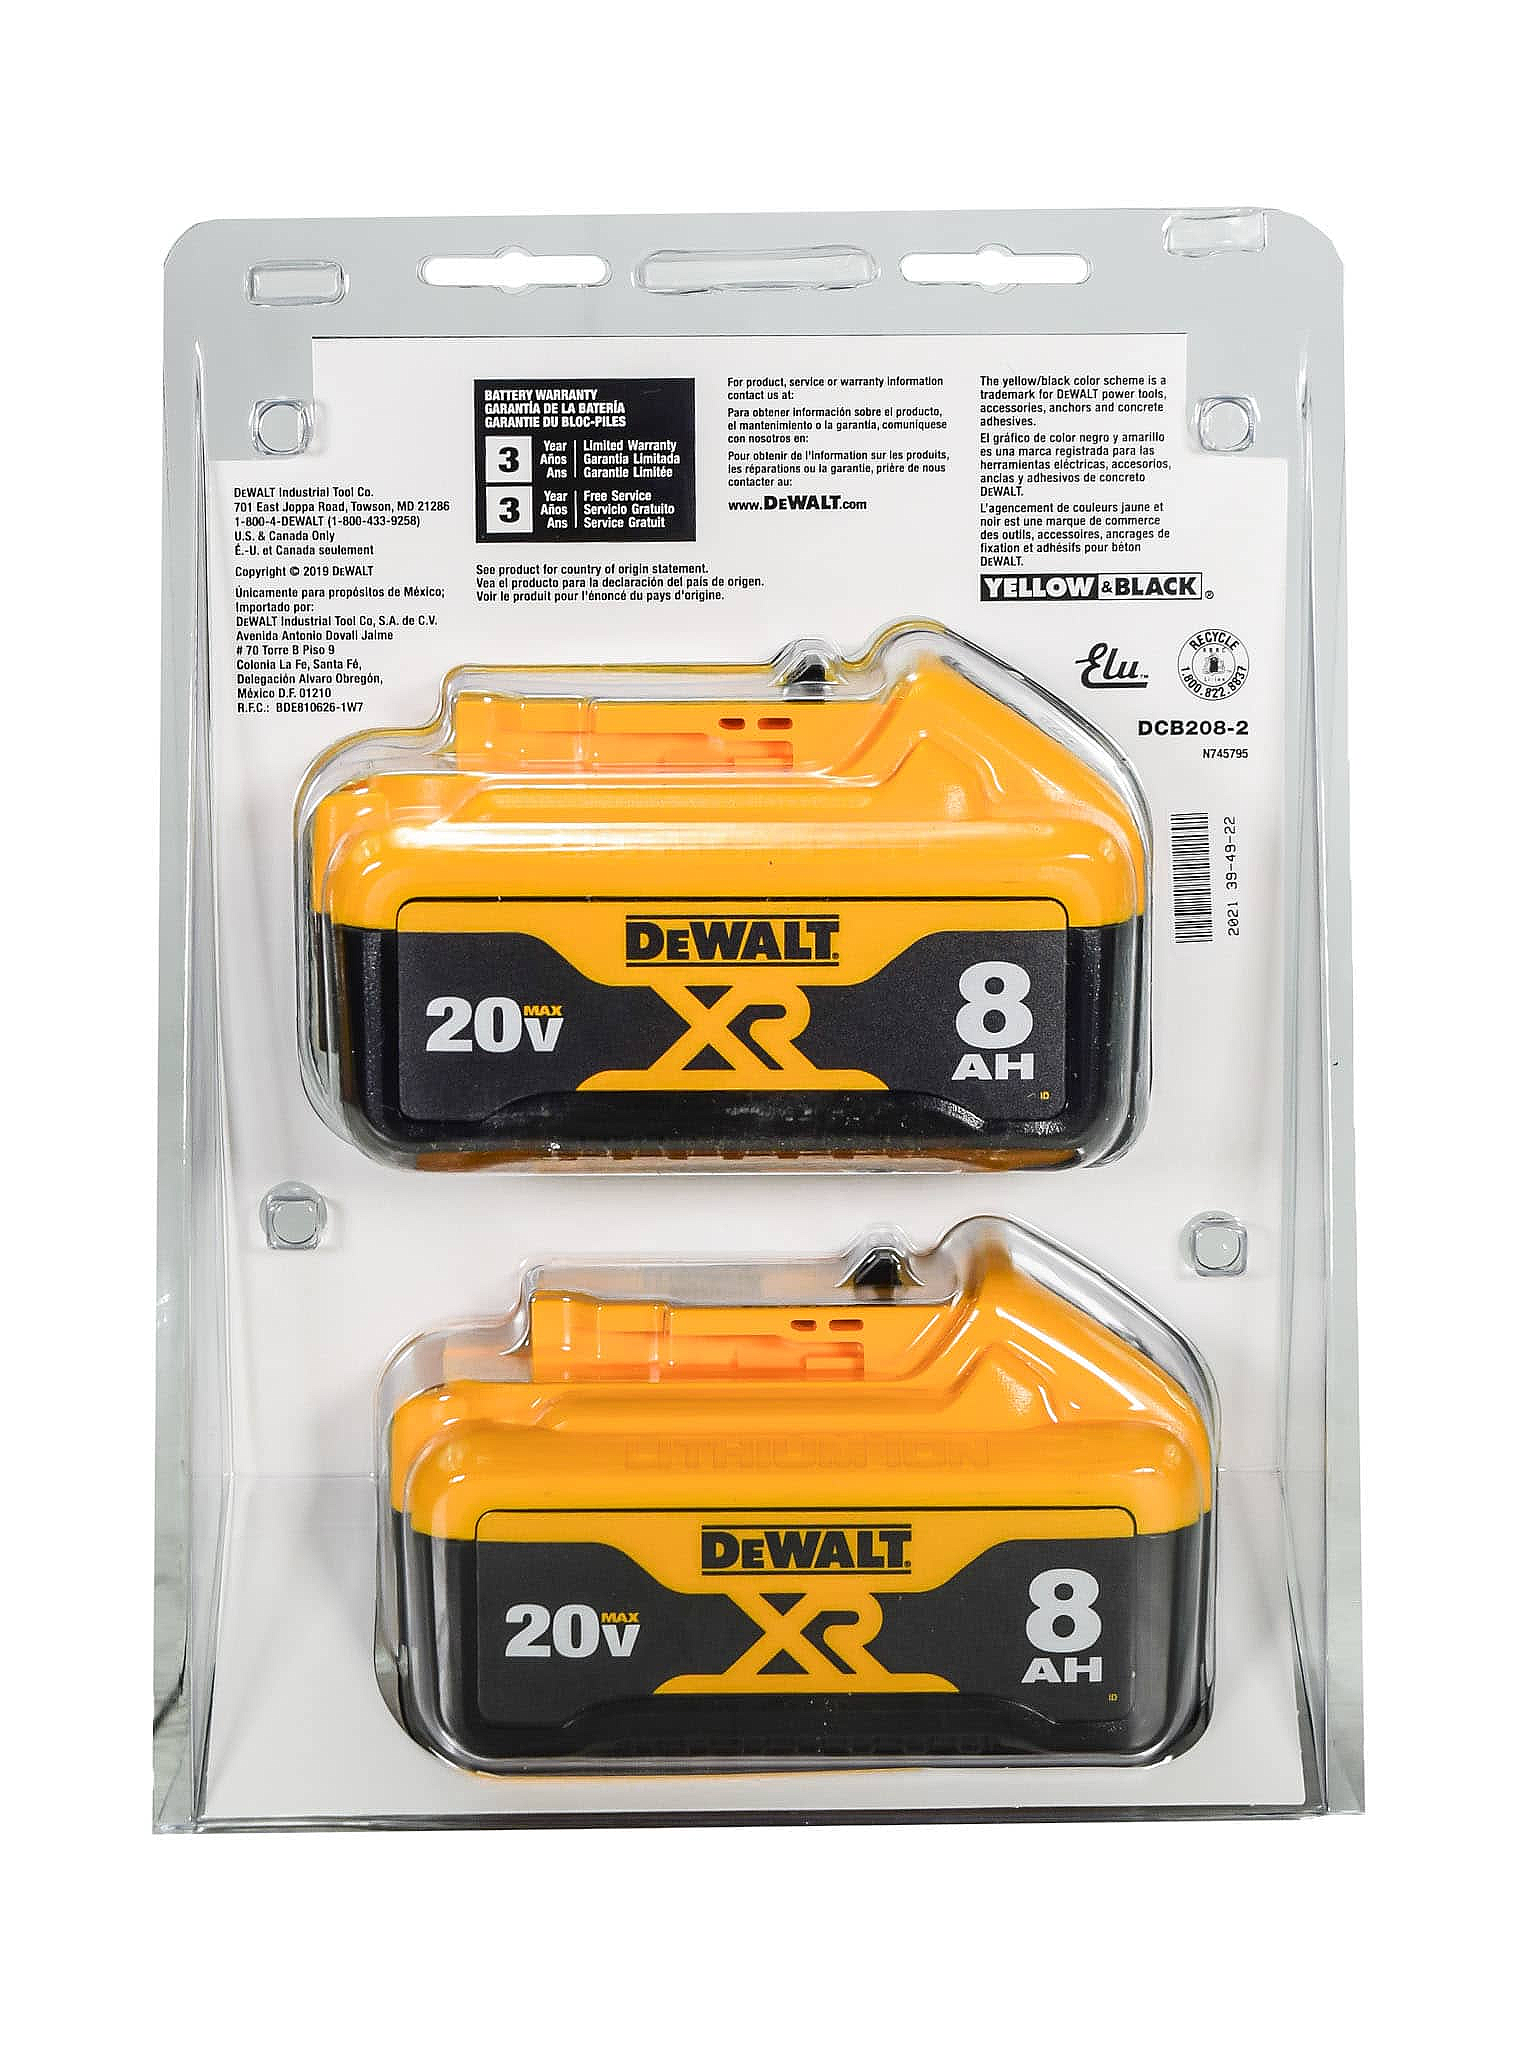 Dewalt-DCB208-2 20V MAX* XR 8Ah Battery-2 Pack - image 4 of 4